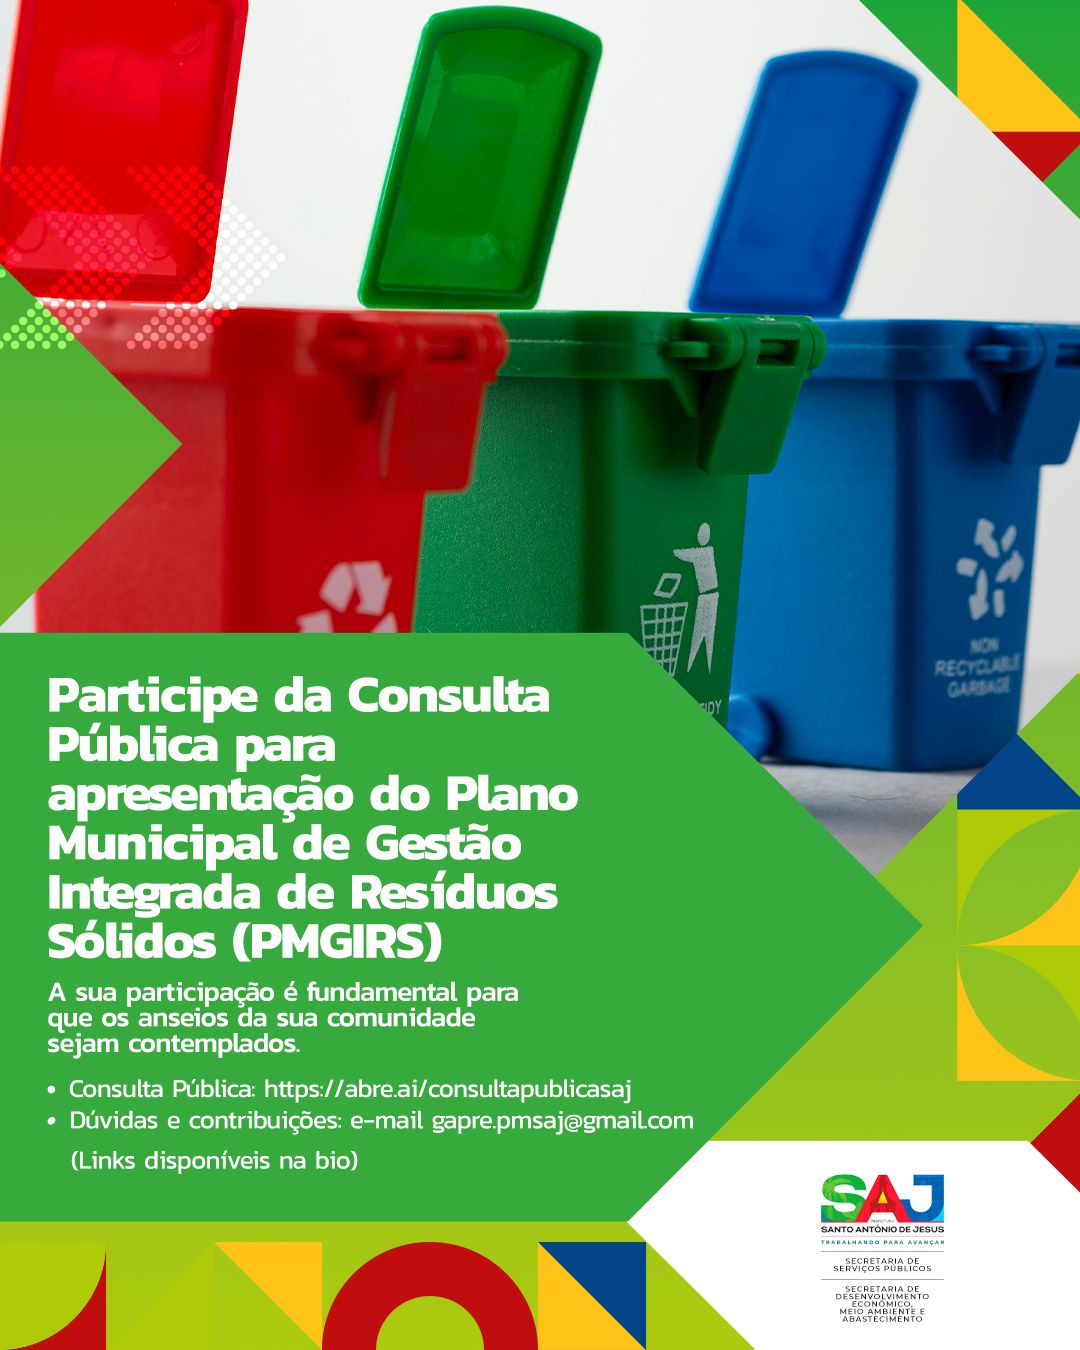 SAJ: Prefeitura informa acerca de Consulta Pública para apresentação do Plano Municipal de Gestão Integrada de Resíduos Sólidos (PMGIRS)